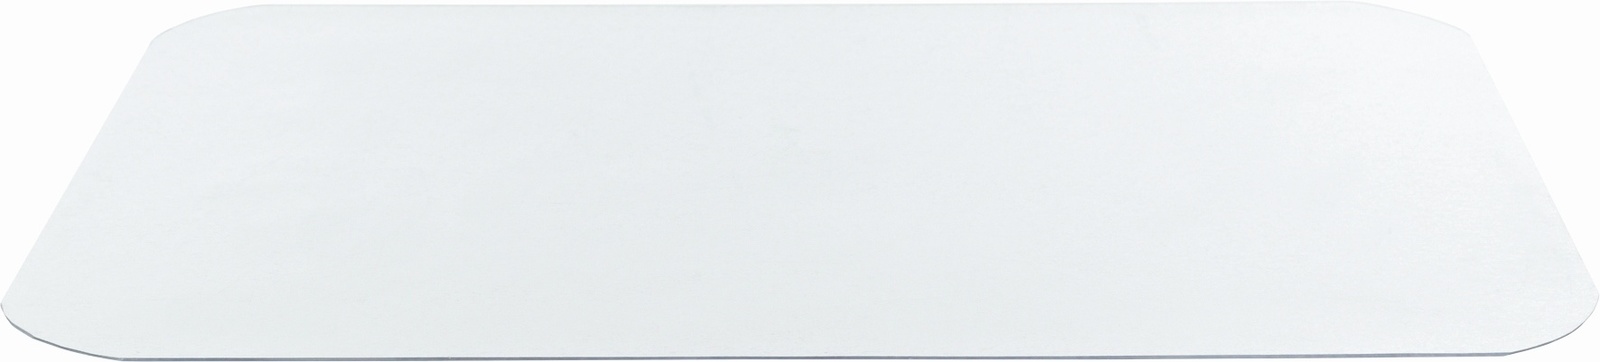 Trixie Trixie коврик под миску, прозрачный (48×30см) trixie trixie коврик под миску прозрачный 48×30см